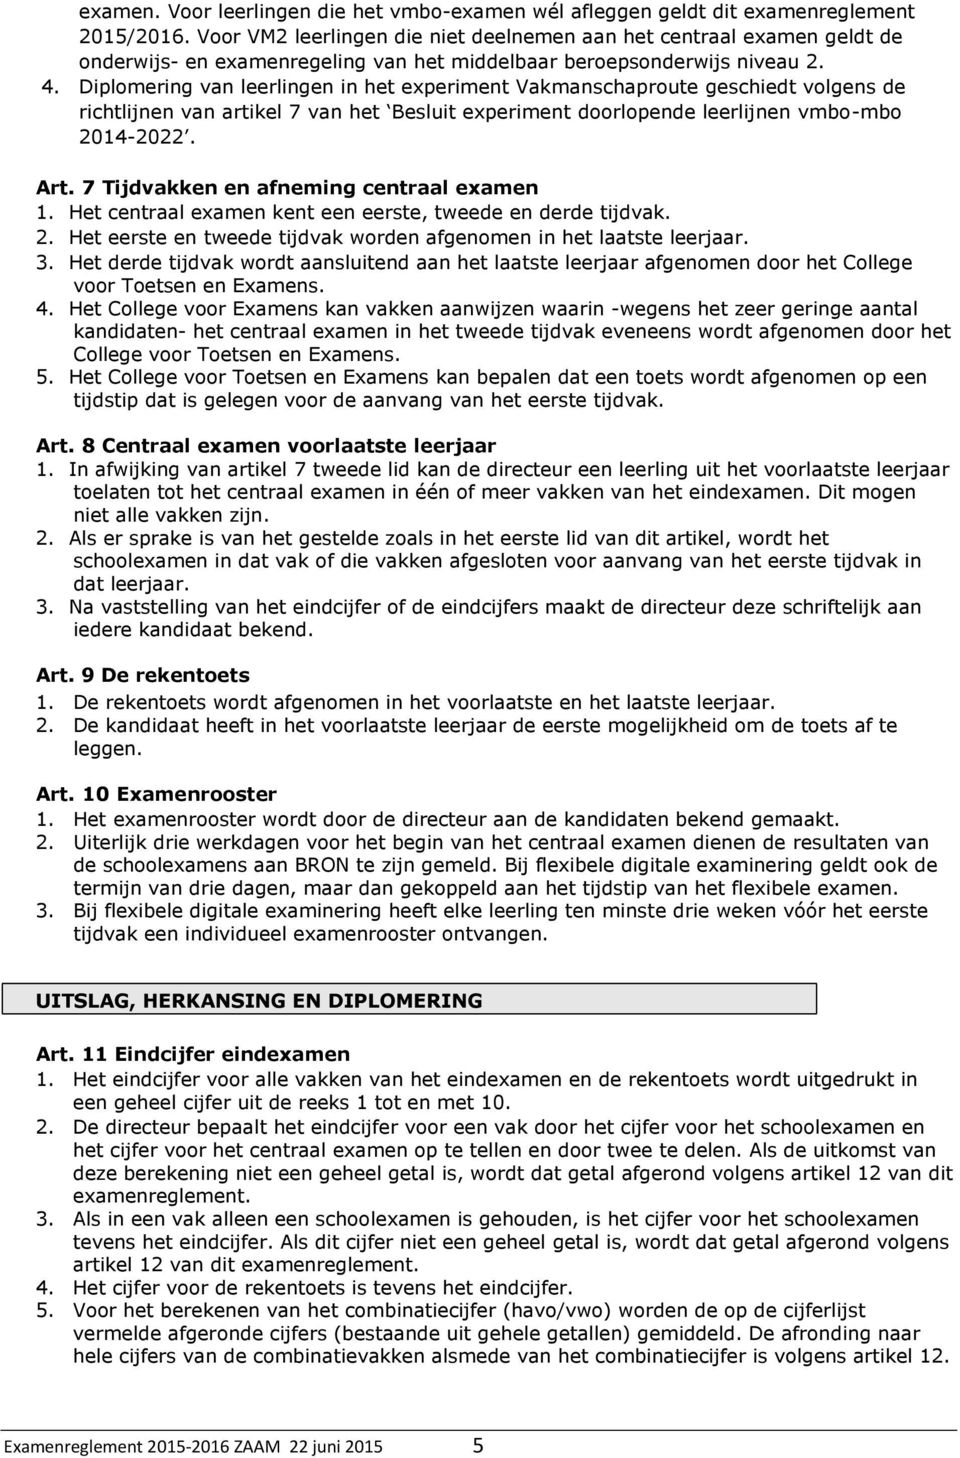 Diplomering van leerlingen in het experiment Vakmanschaproute geschiedt volgens de richtlijnen van artikel 7 van het Besluit experiment doorlopende leerlijnen vmbo-mbo 2014-2022. Art.